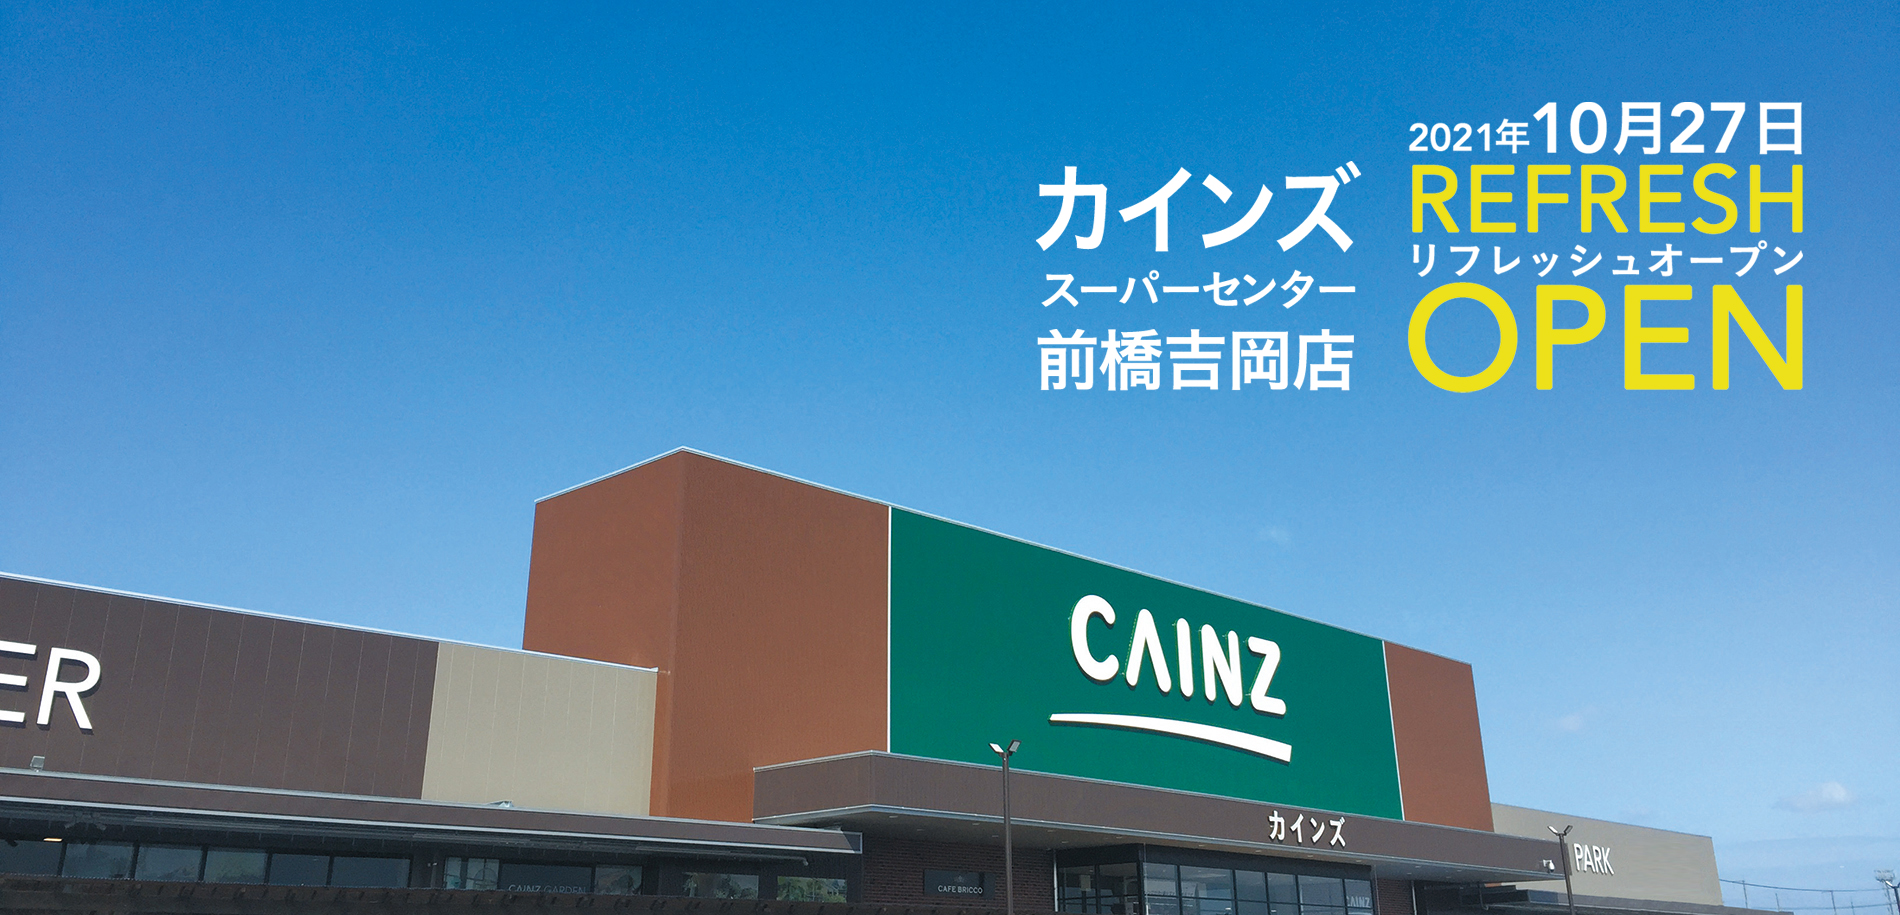 カインズnews カインズスーパーセンター前橋吉岡店10 27刷新 流通スーパーニュース